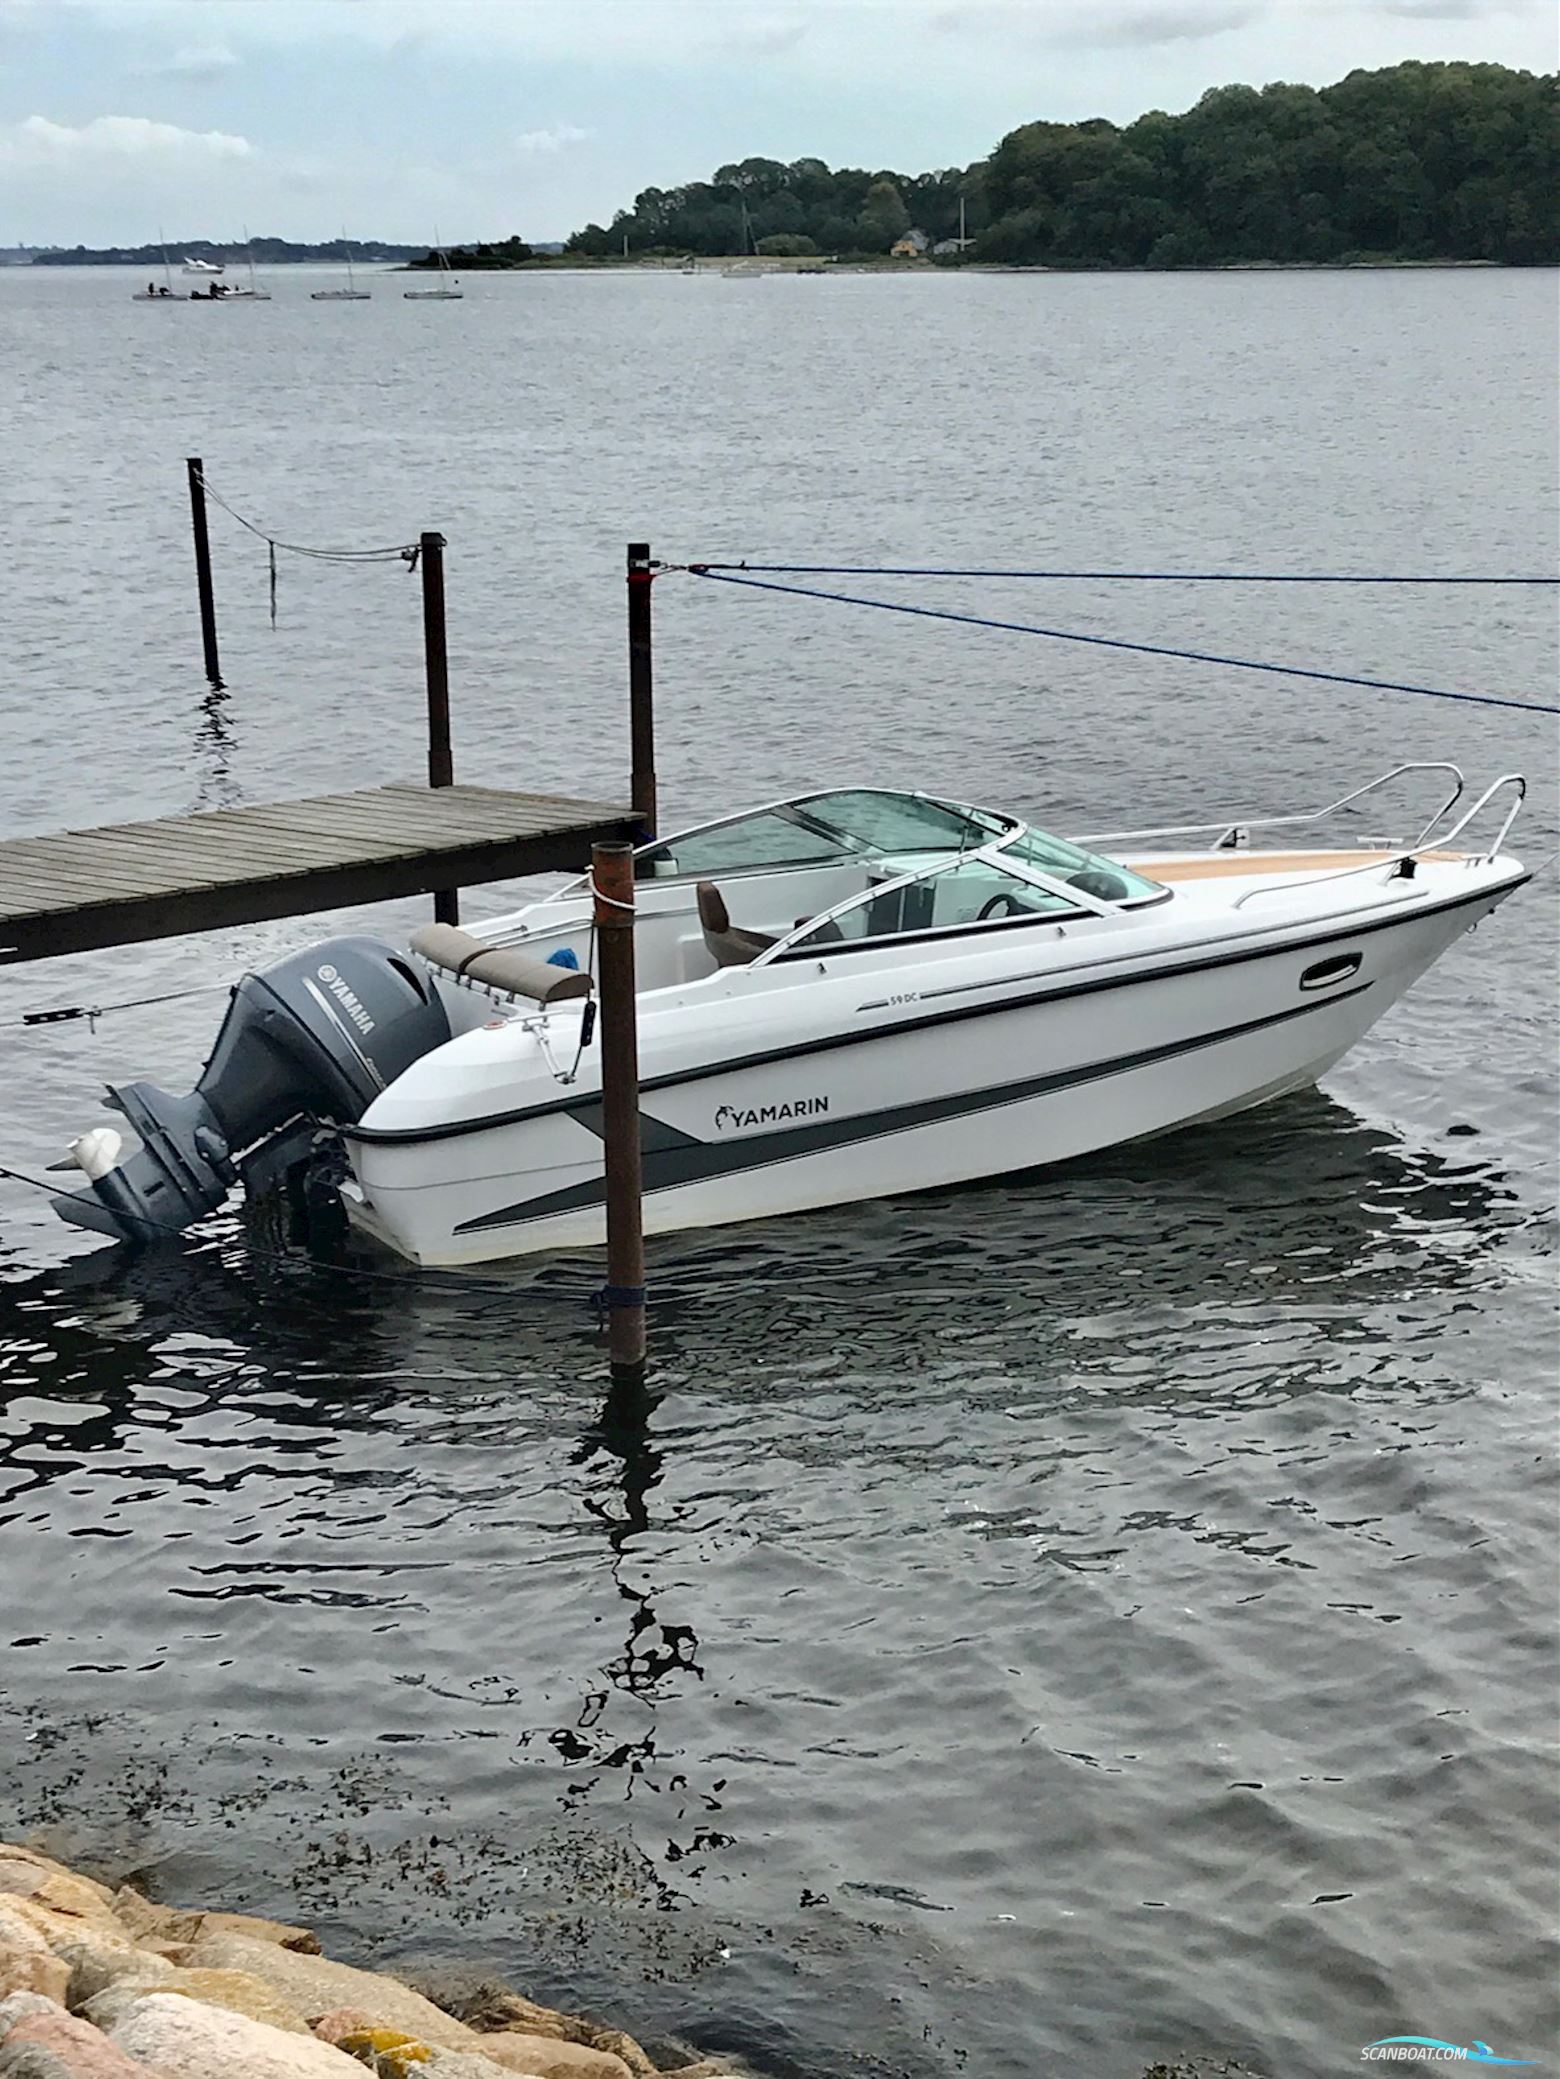 Yamarin 59DC Motor boat 2019, with Yamaha engine, Denmark